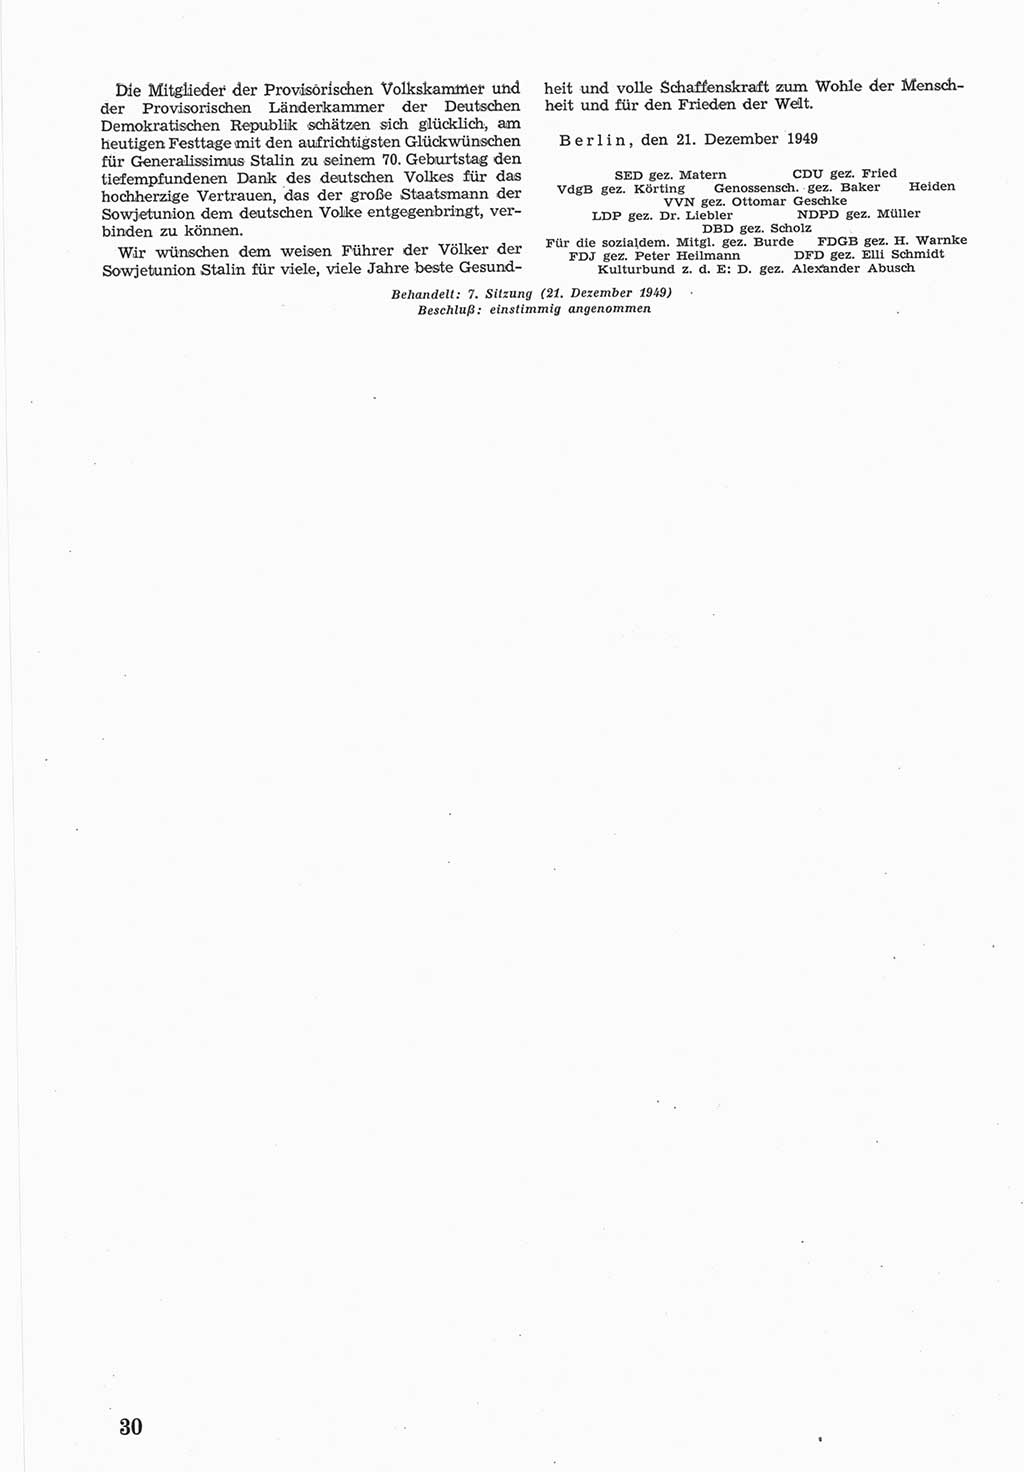 Provisorische Volkskammer (VK) der Deutschen Demokratischen Republik (DDR) 1949-1950, Dokument 598 (Prov. VK DDR 1949-1950, Dok. 598)